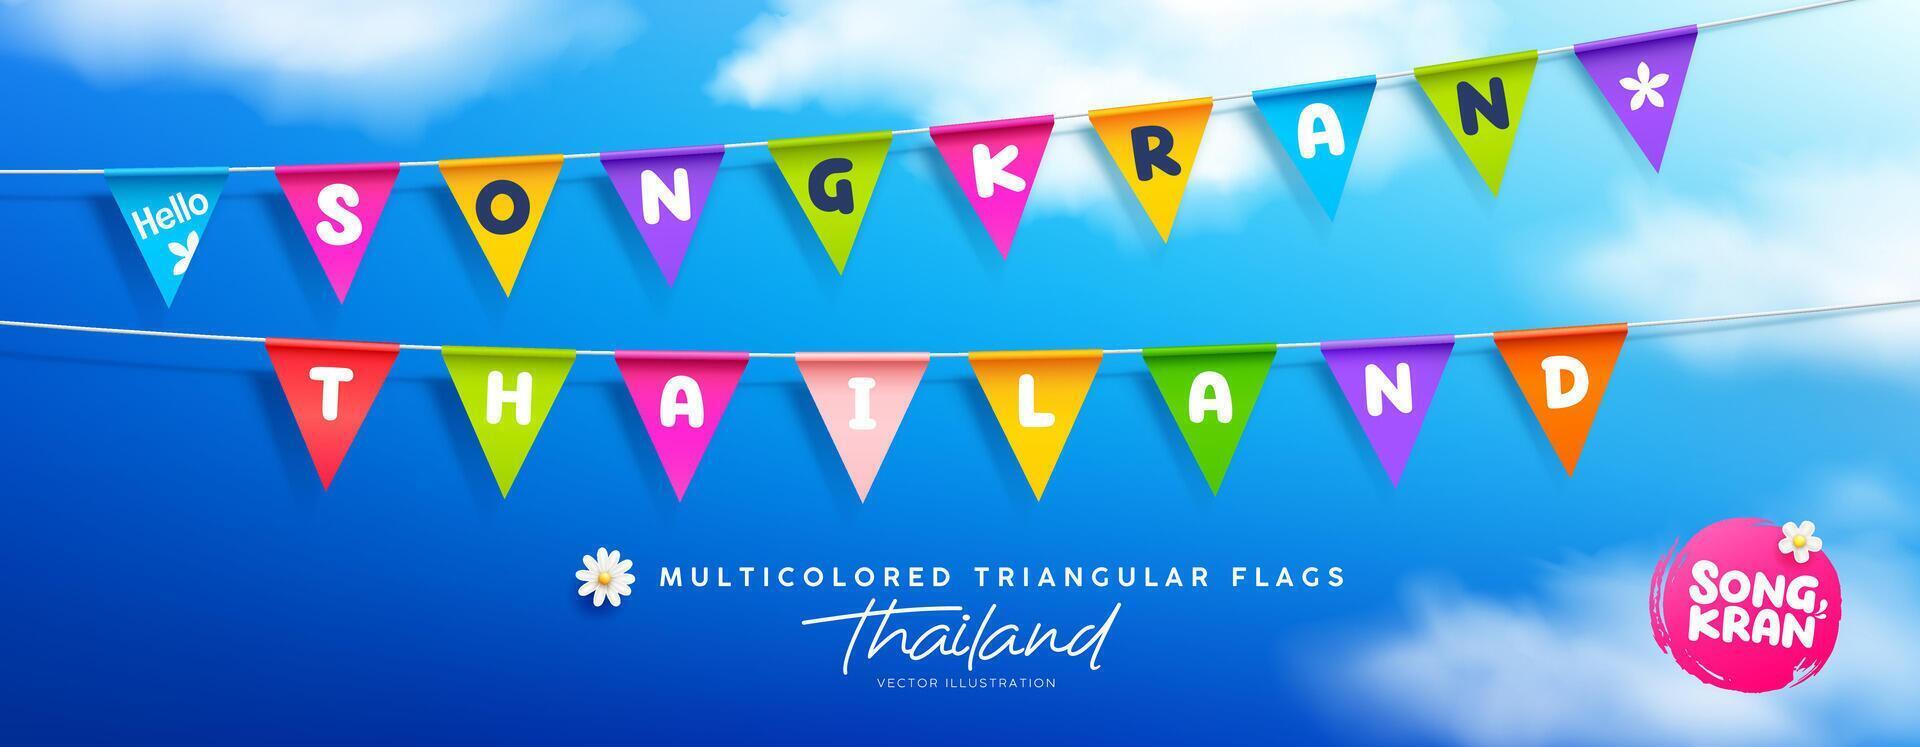 songkran water festival Thailand, kleurrijk driehoekig vlaggen, collecties banier ontwerp Aan wolk en lucht blauw achtergrond, eps 10 vector illustratie